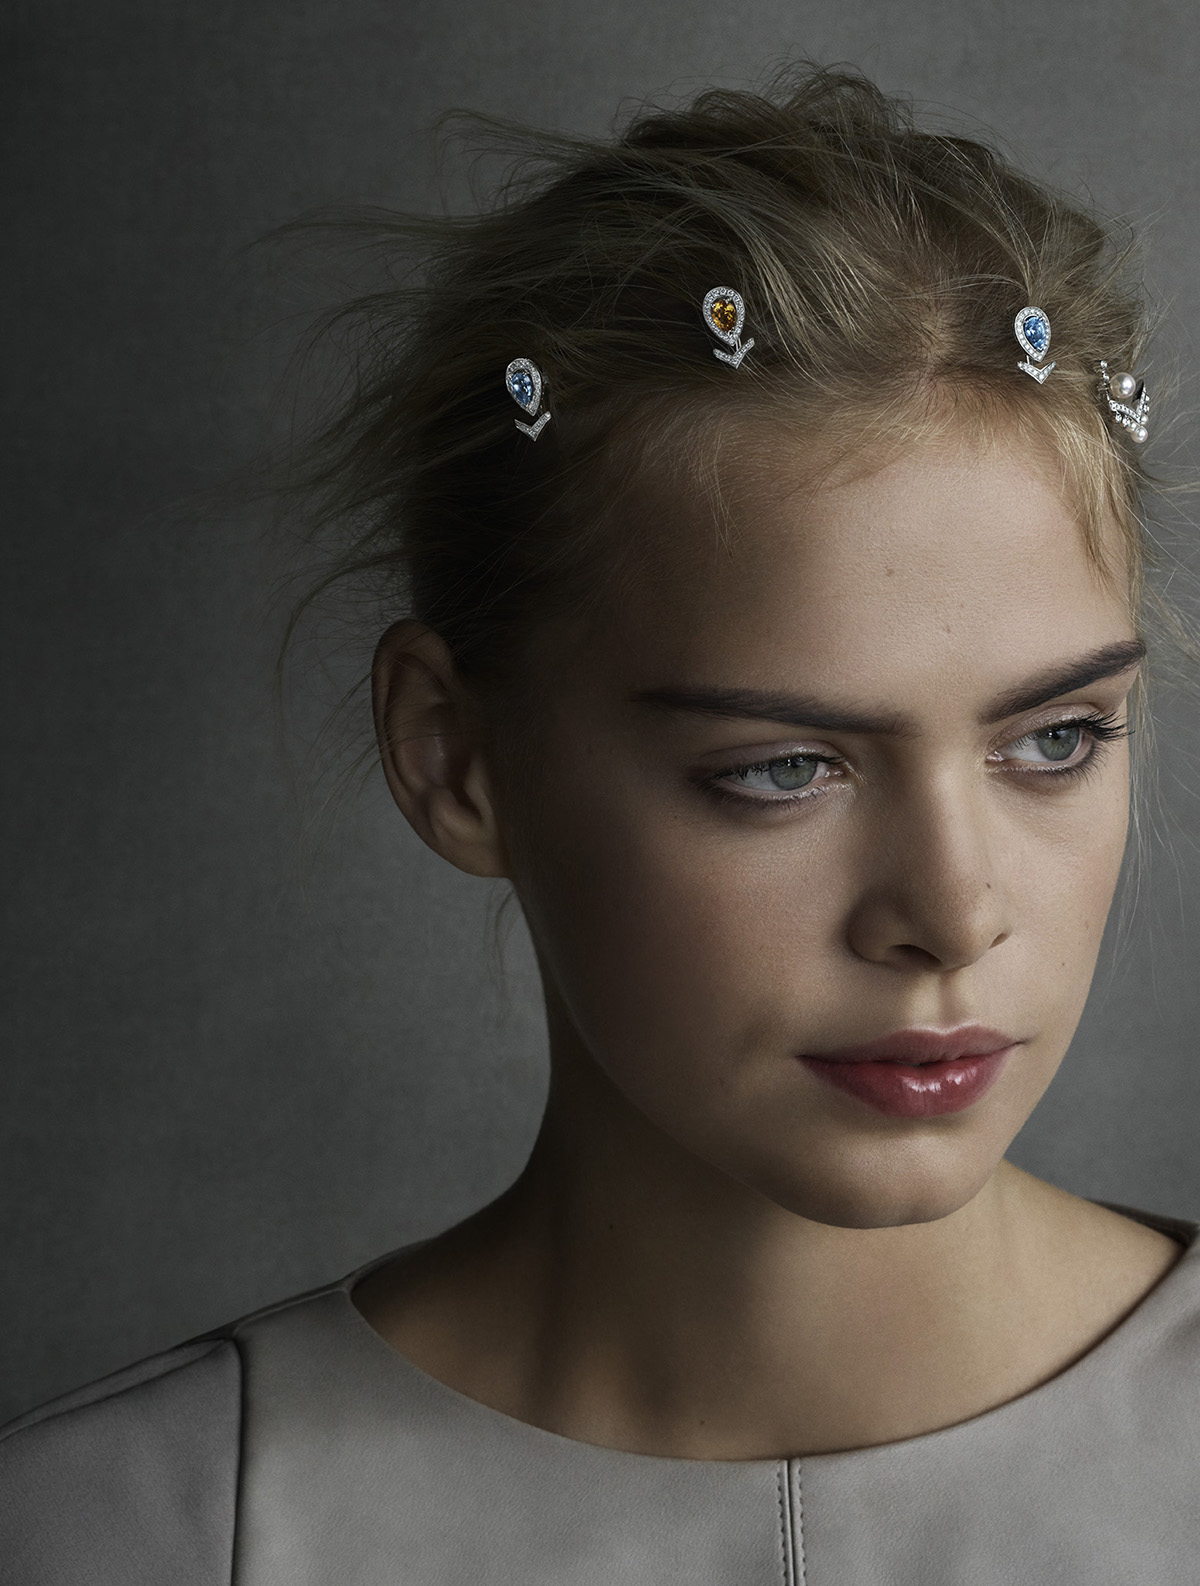 model wearing head jewellery